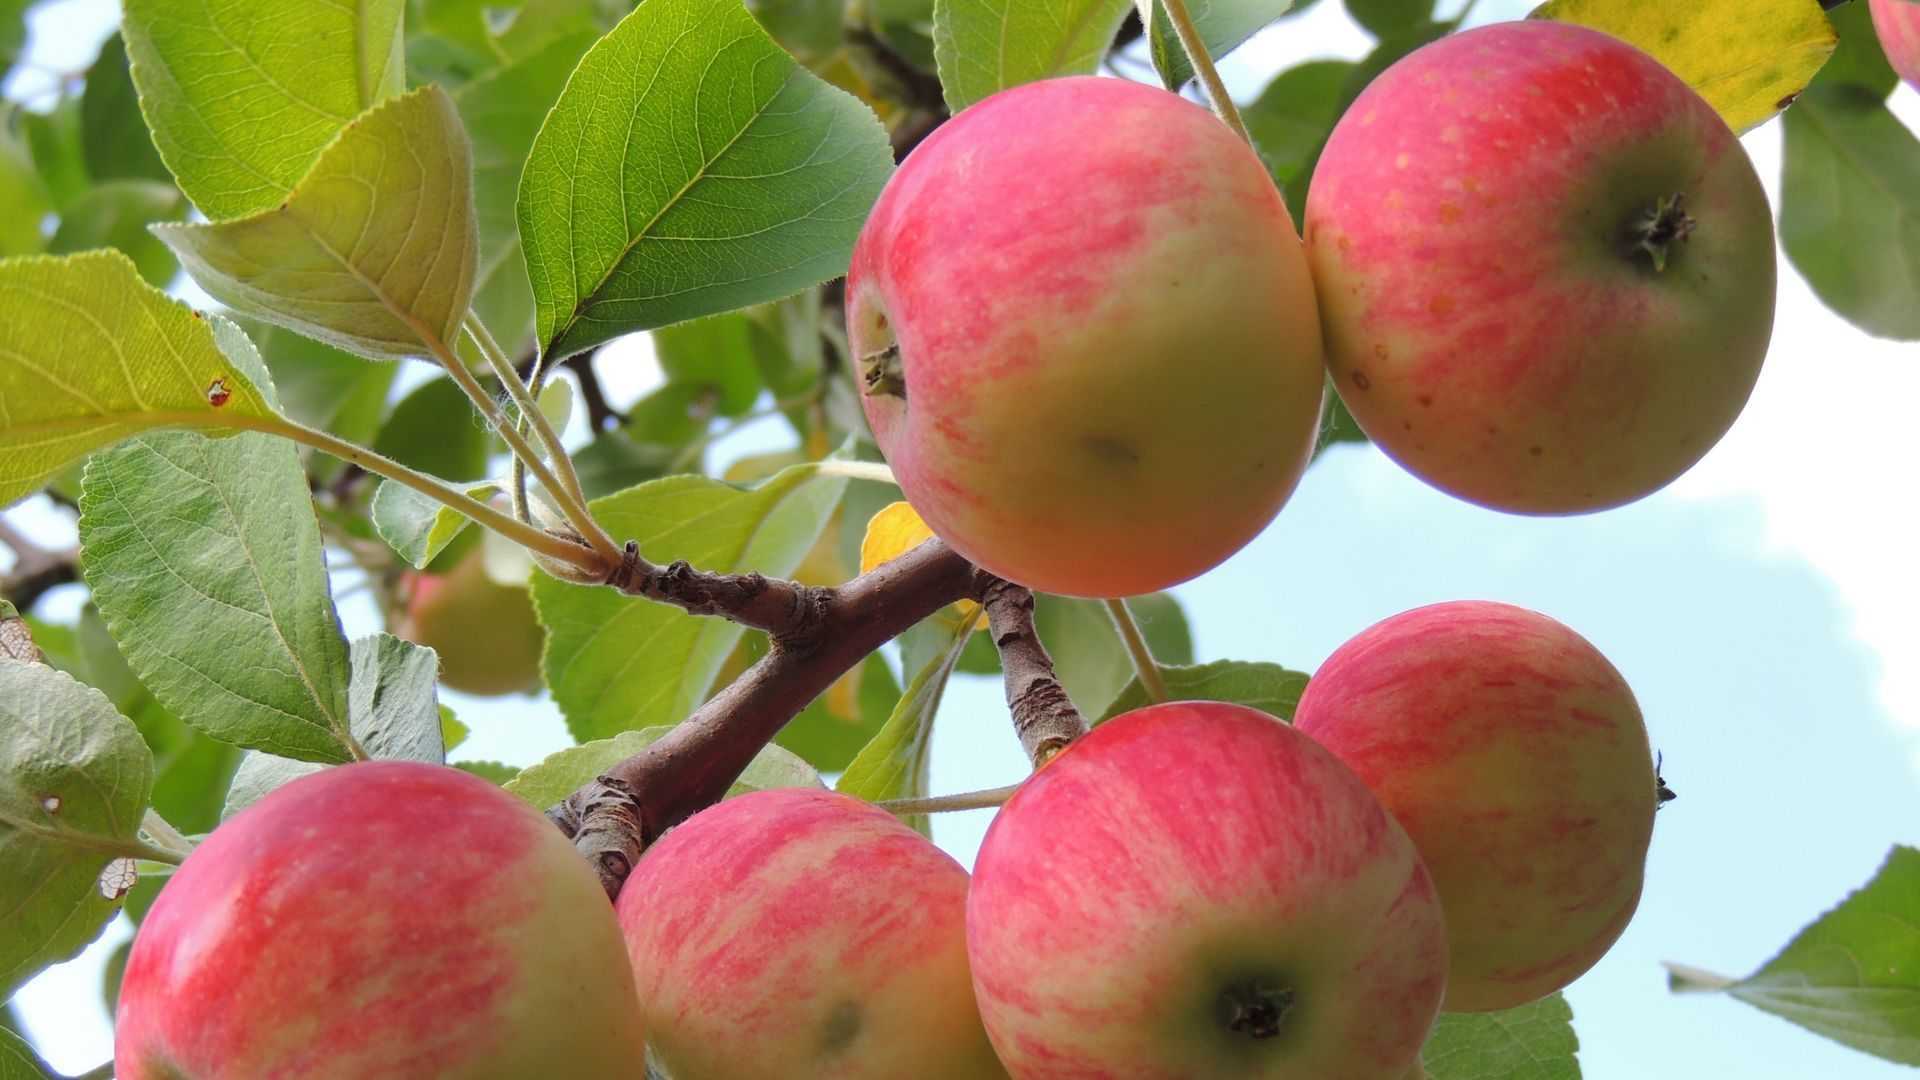 Яблоня «услада» — старый поверенный сорт